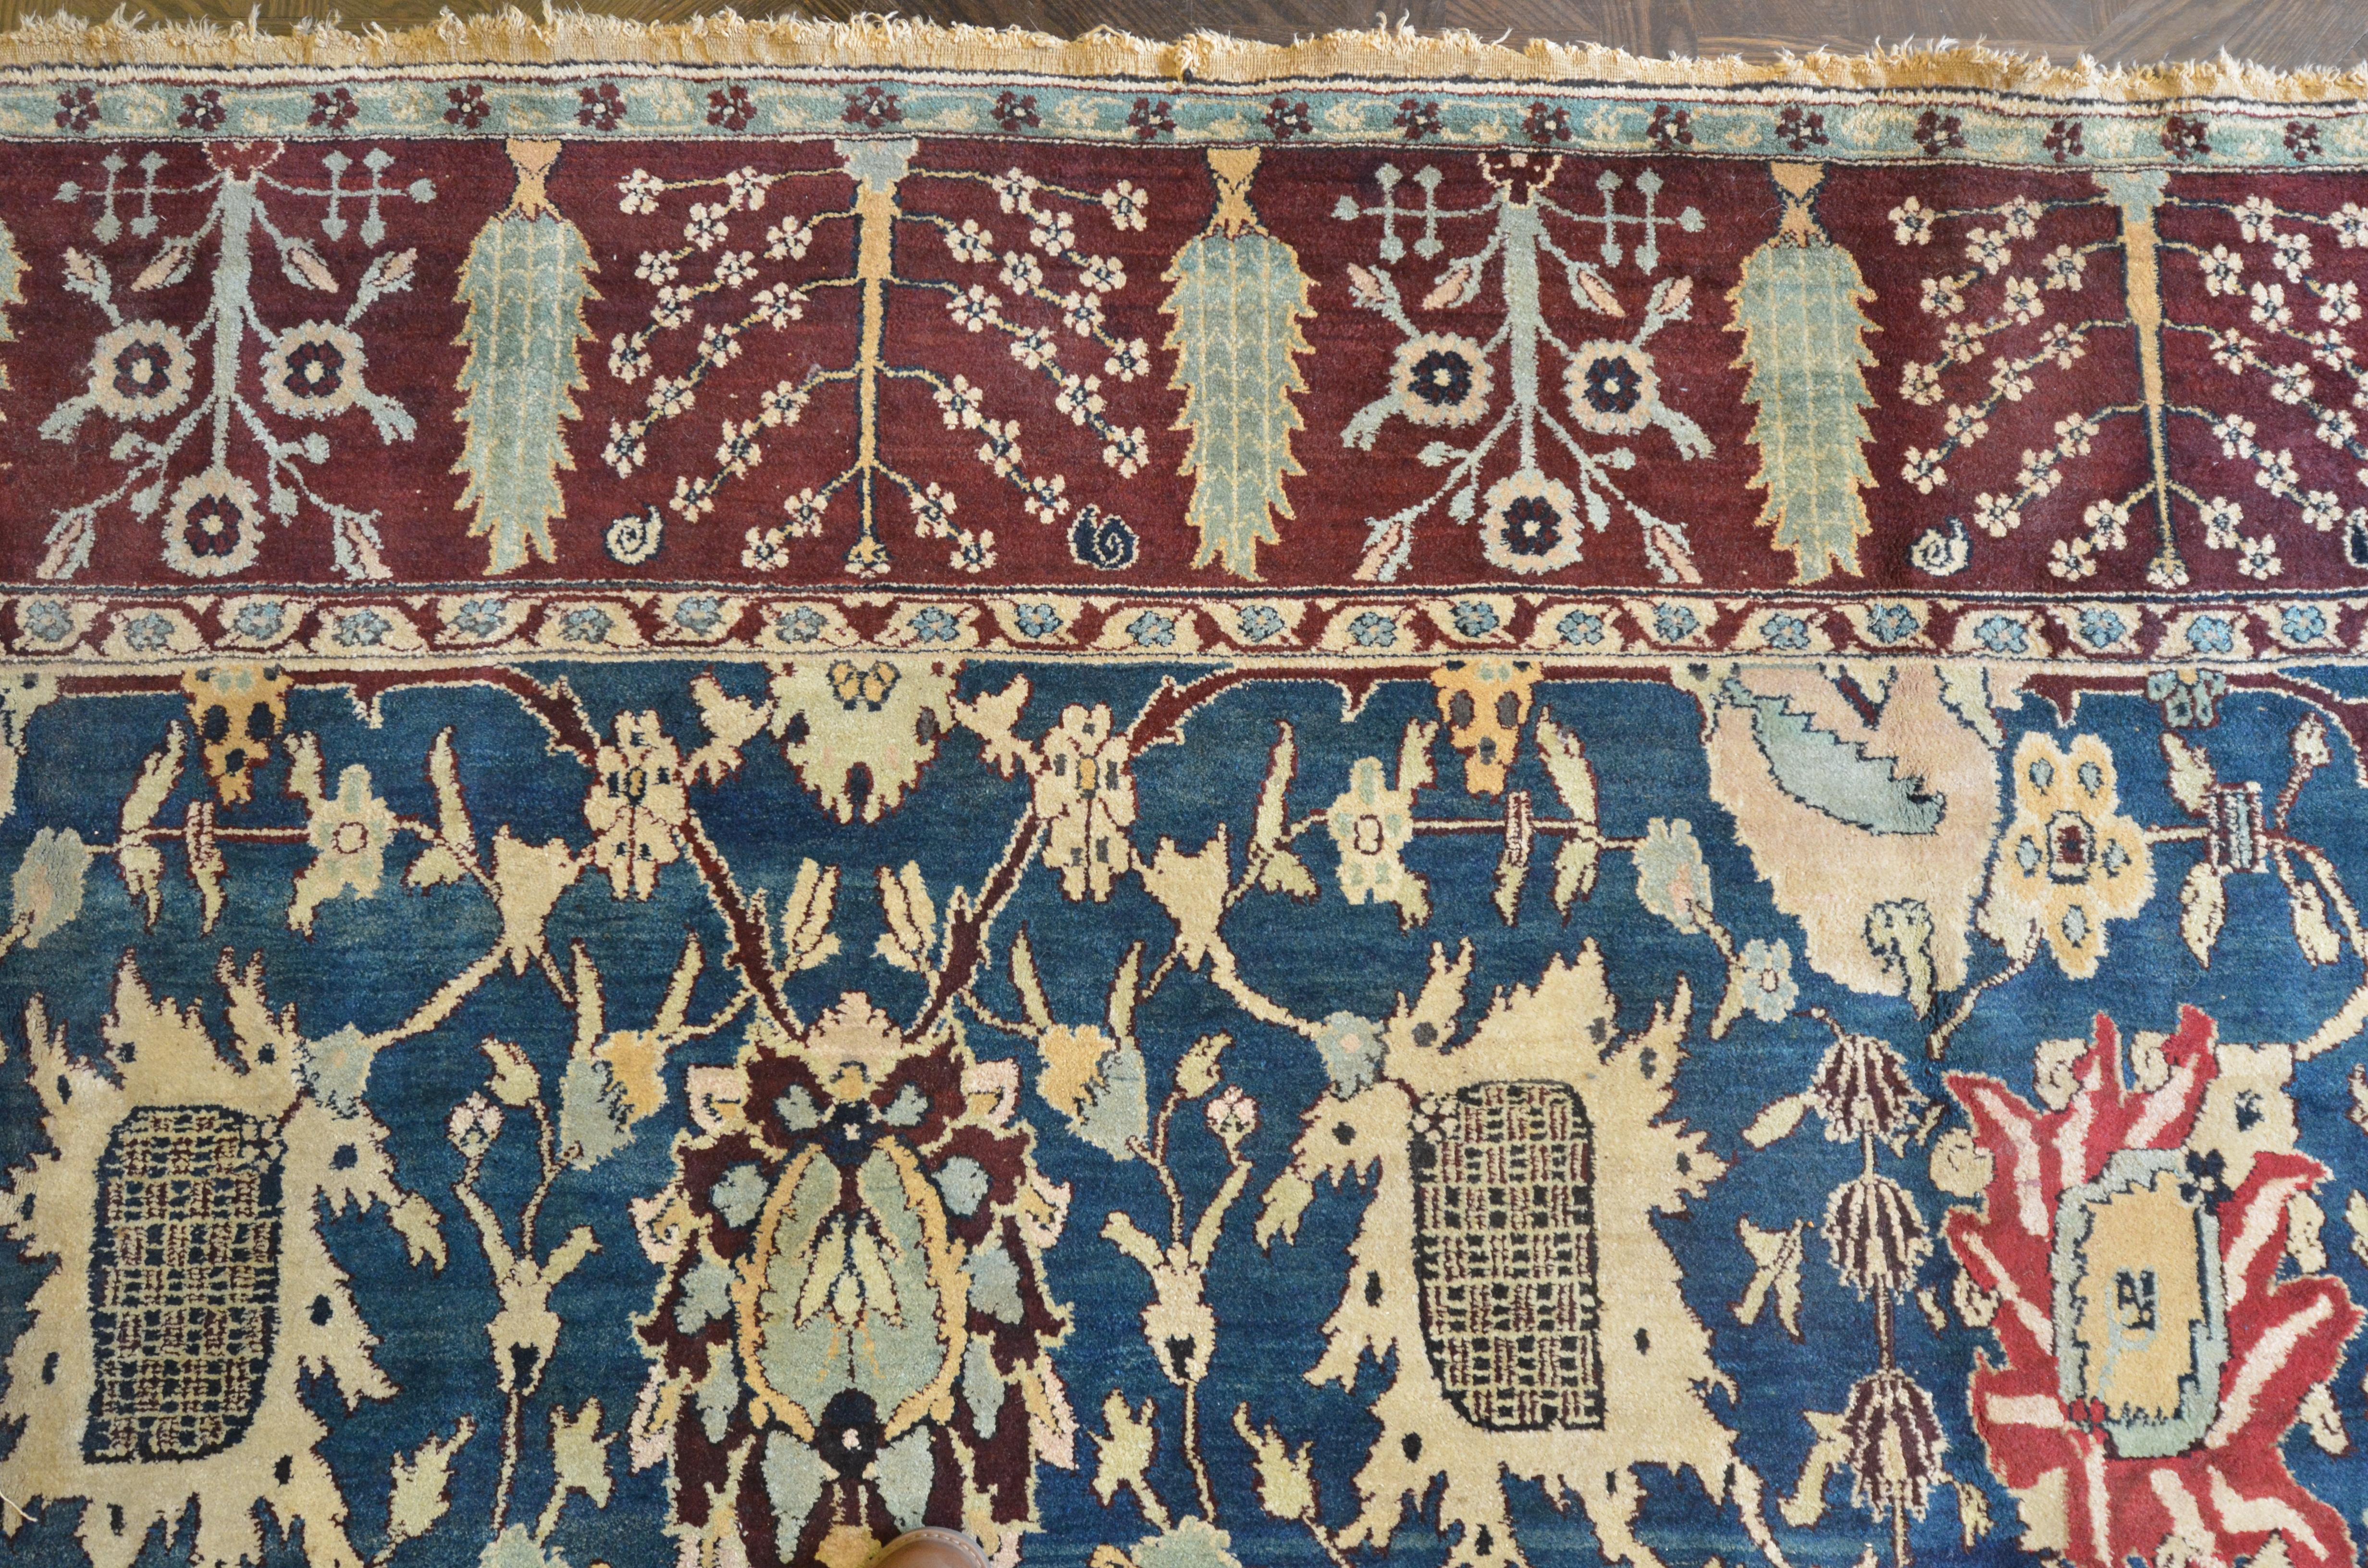 Ce tapis traditionnel indien tissé à la main à Agra présente un champ extrêmement fin de couleur bleu moyen avec un motif contrasté de palmettes et de vignes florales, dans une bordure rouge bourgogne avec des cyprès alternant avec des gerbes